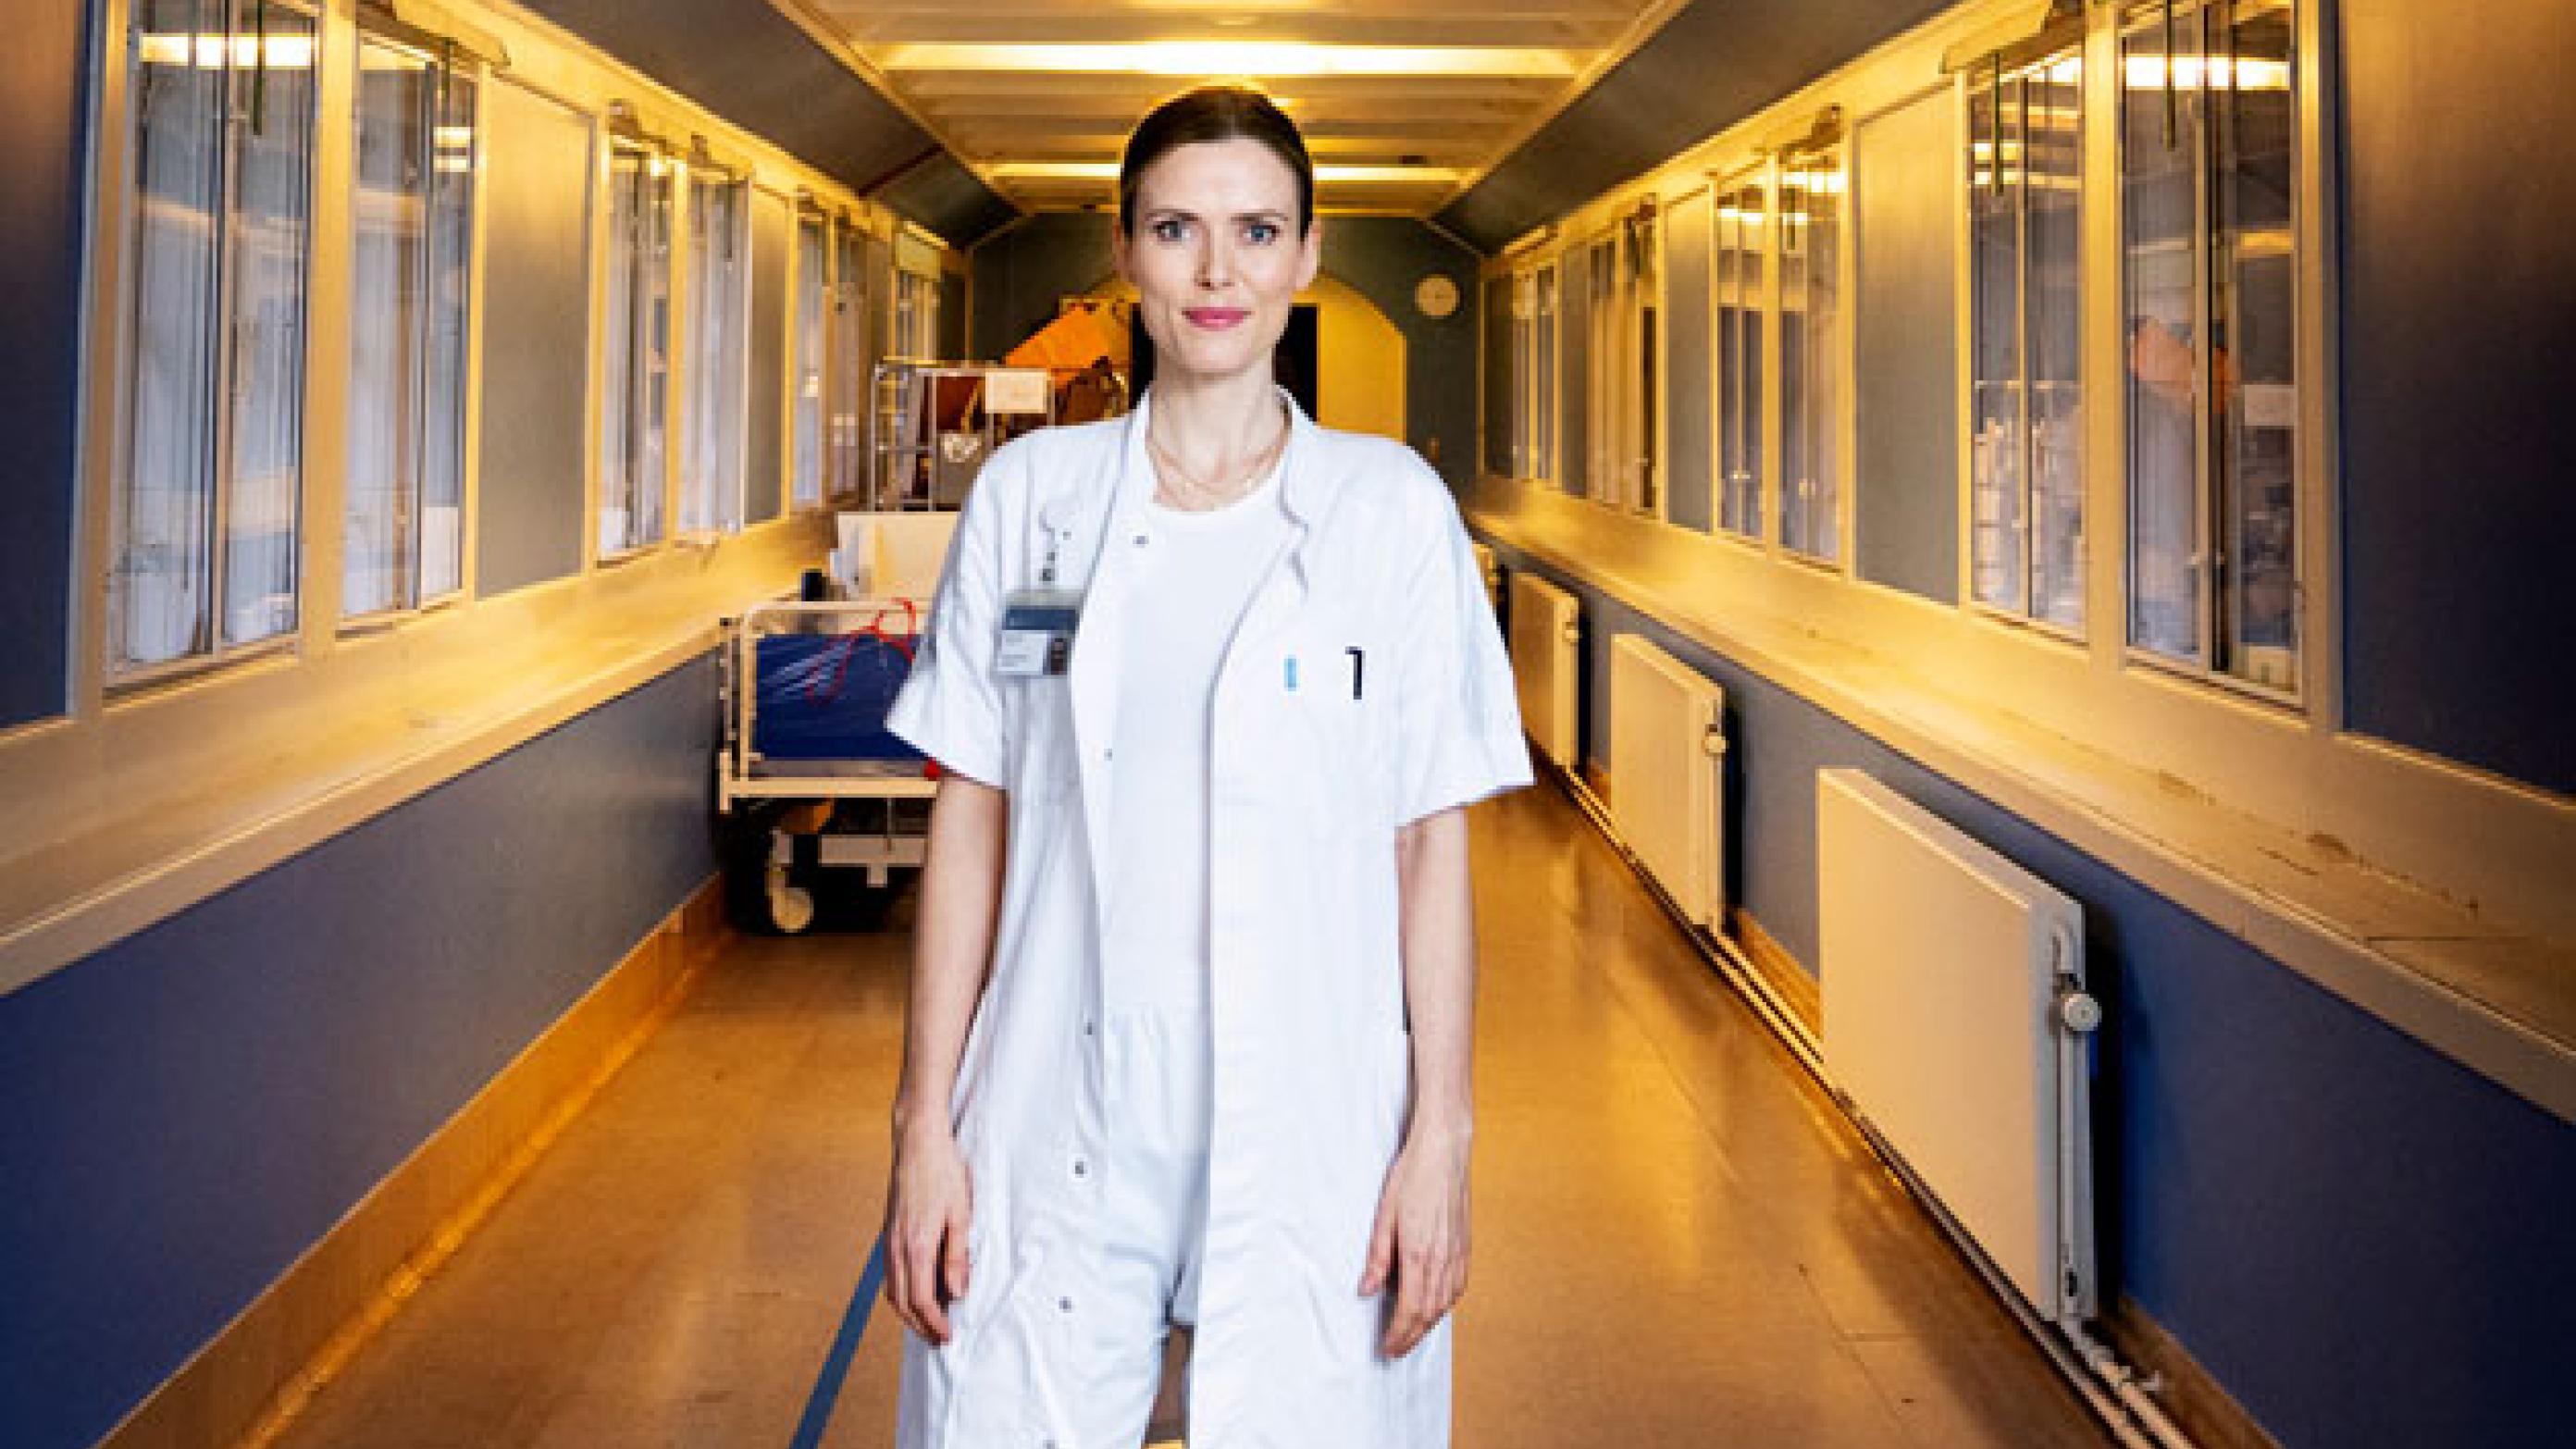 Læge Cæcilie Bachdal Johansen arbejder på Dermatologisk Afdeling på Bispebjerg Hospital. Hun har netop afleveret sin ph.d.-afhandling om kvinder med psoriasis. Foto: Claus Bech